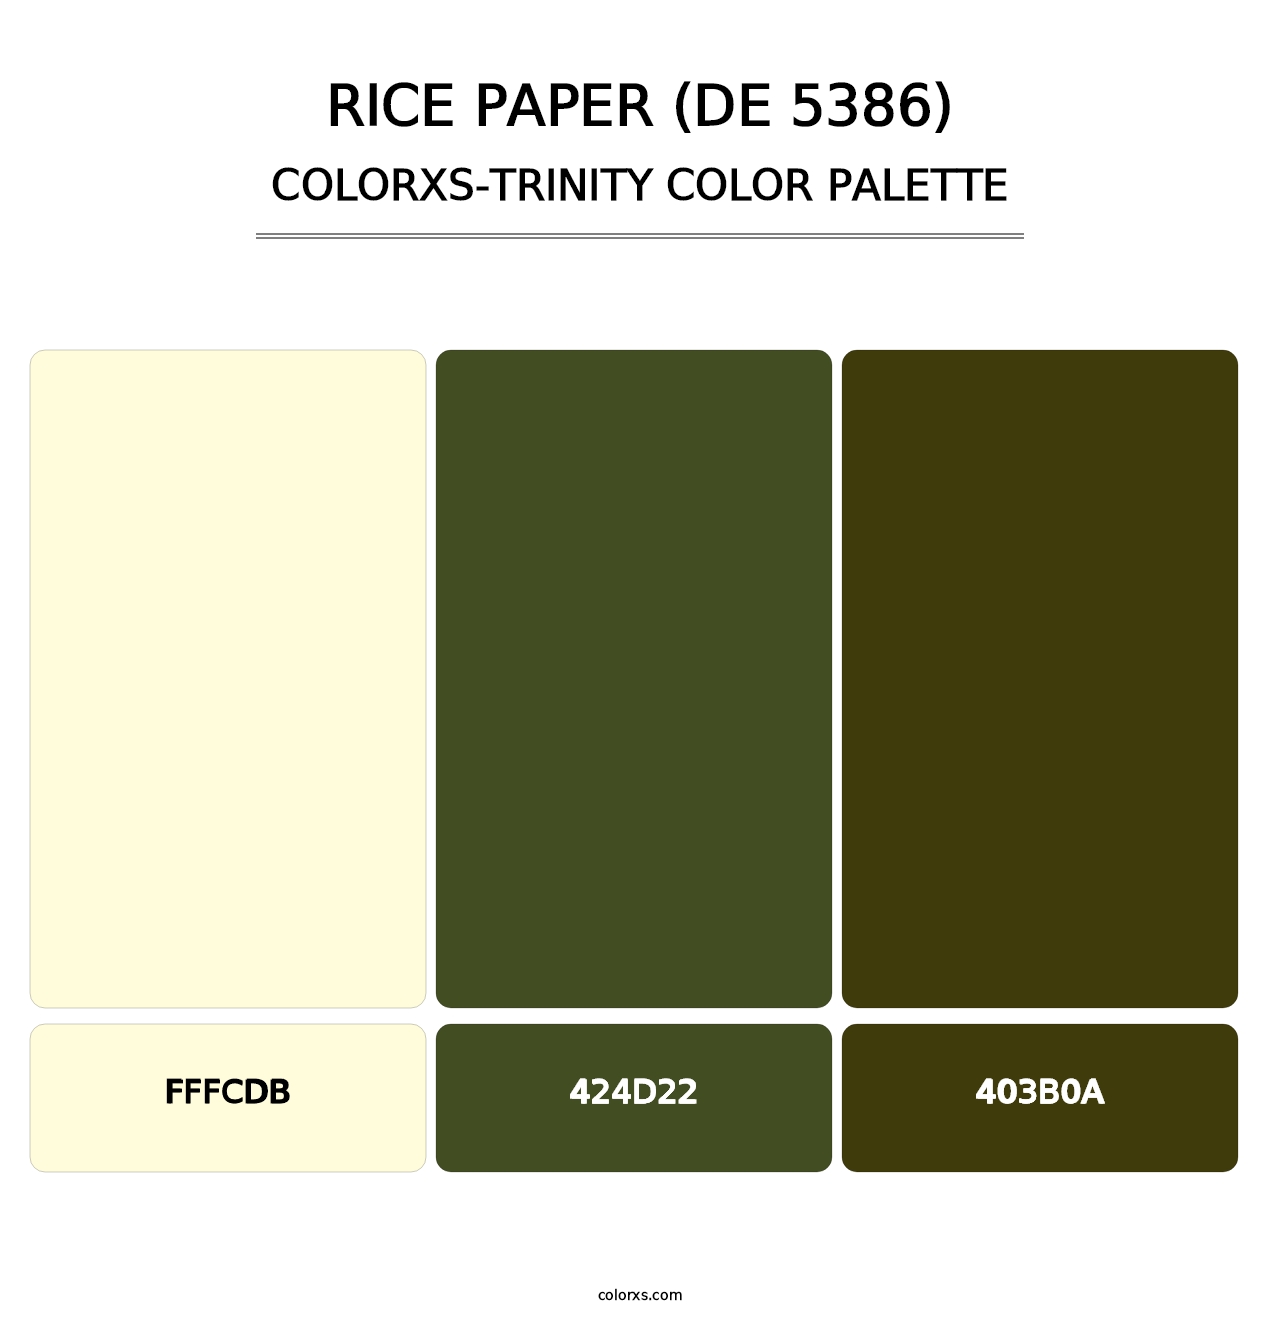 Rice Paper (DE 5386) - Colorxs Trinity Palette